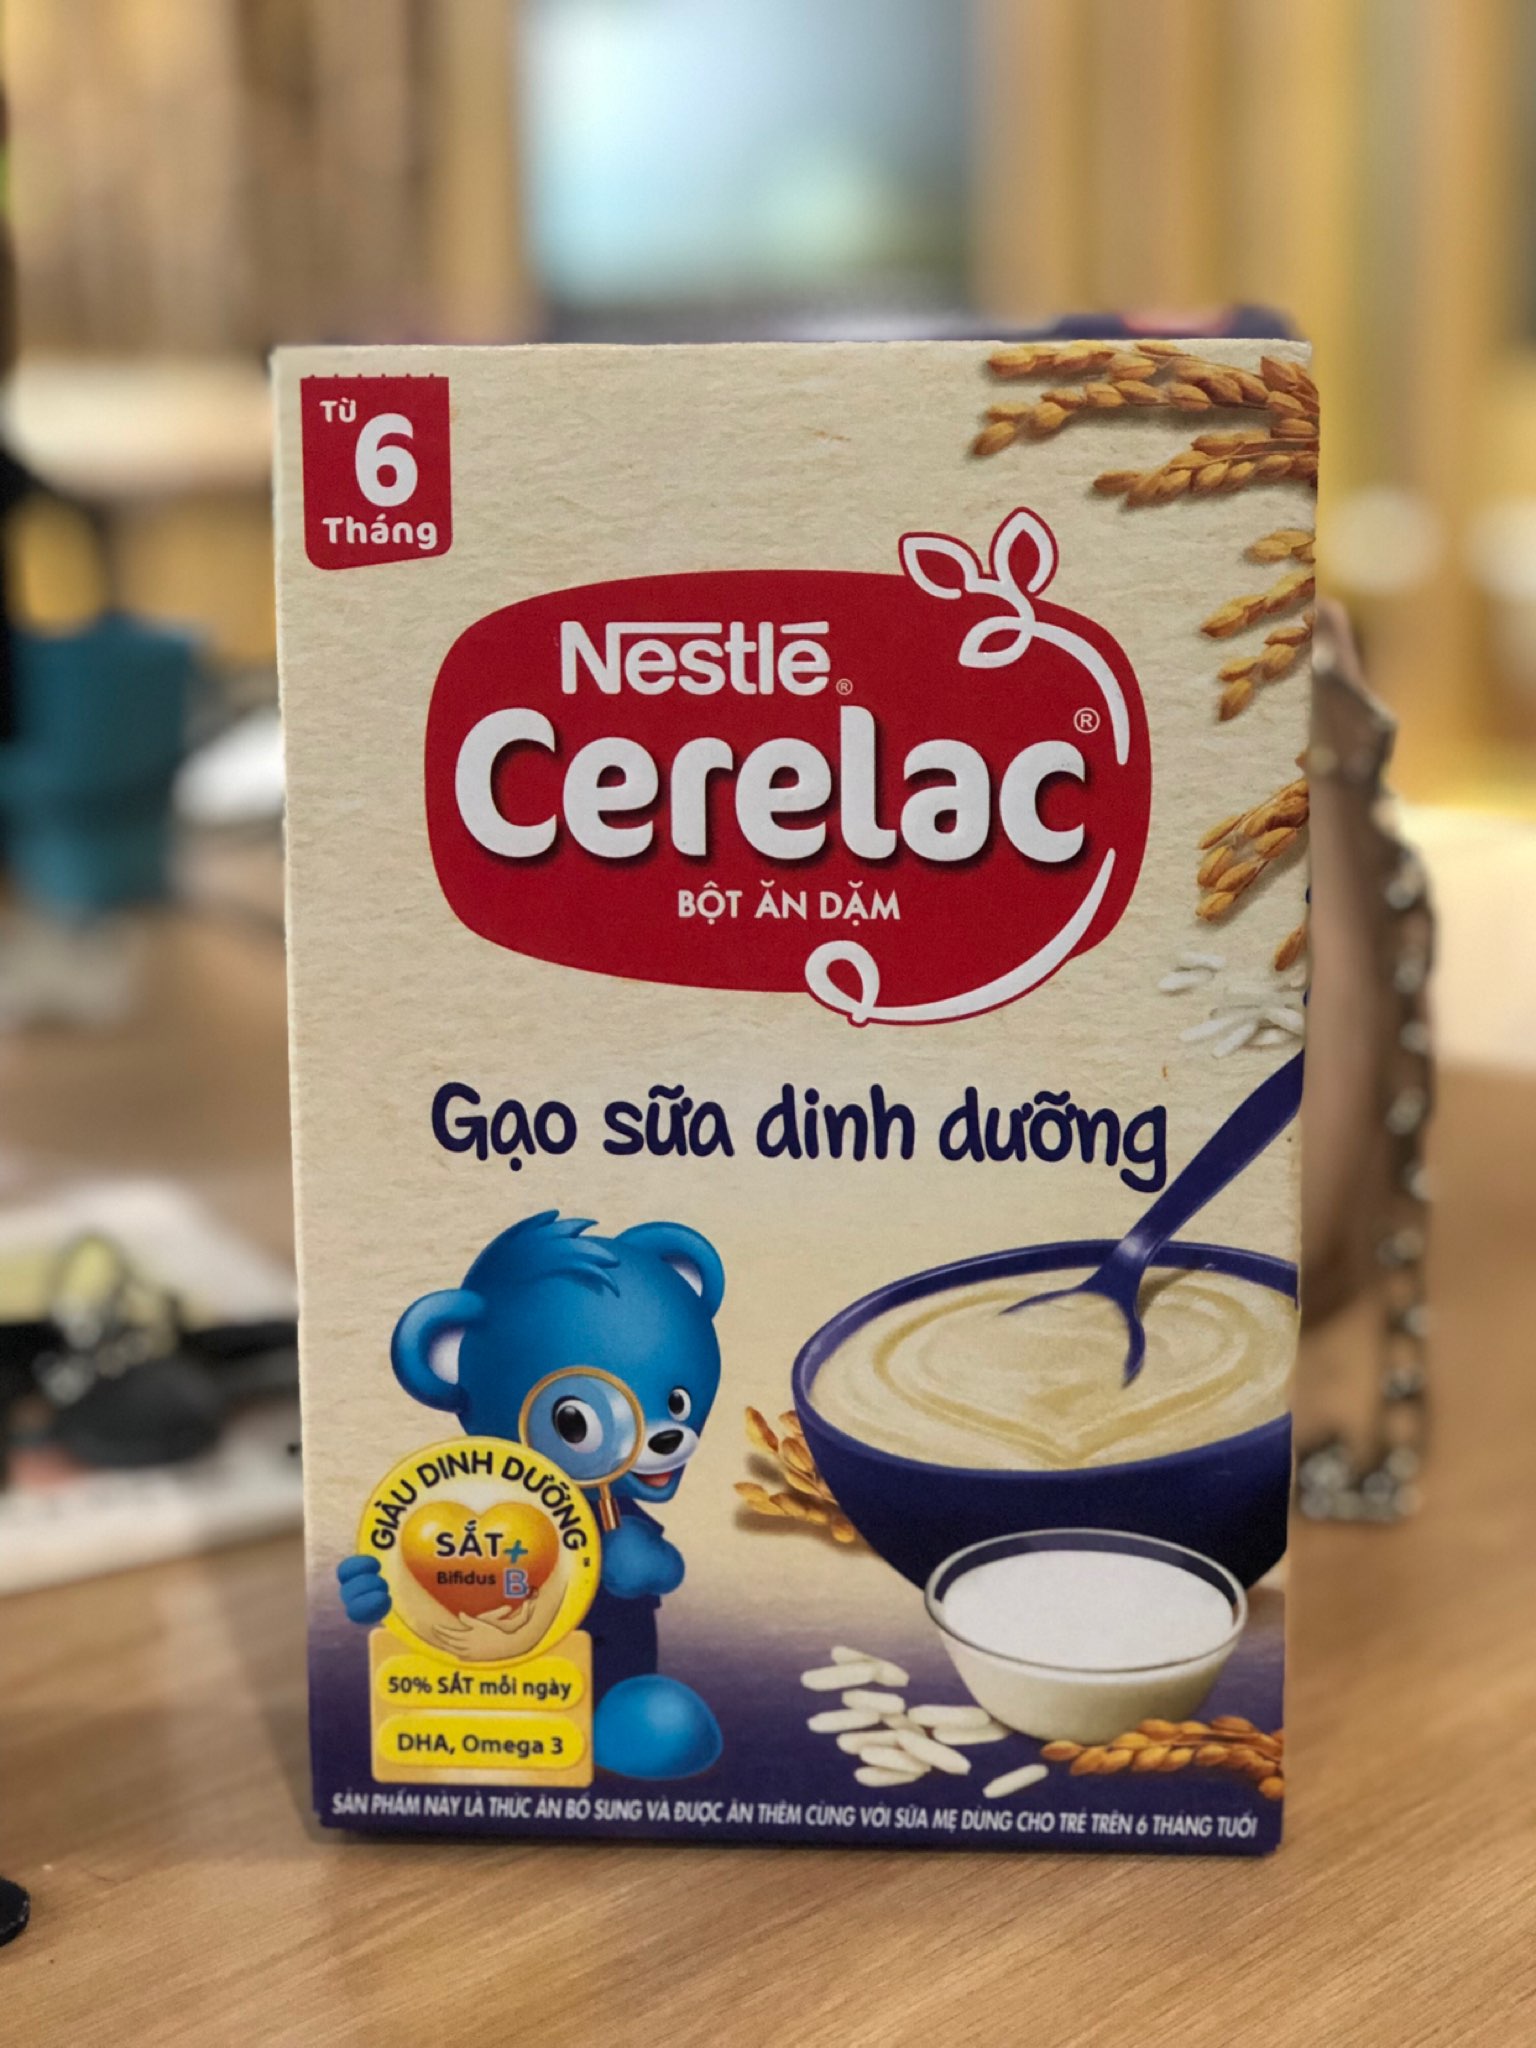 Bột Ăn Dặm Nestle Cerelac  Vị Gạo Sữa Dinh Dưỡng – Bổ Sung DHA, Omega-3